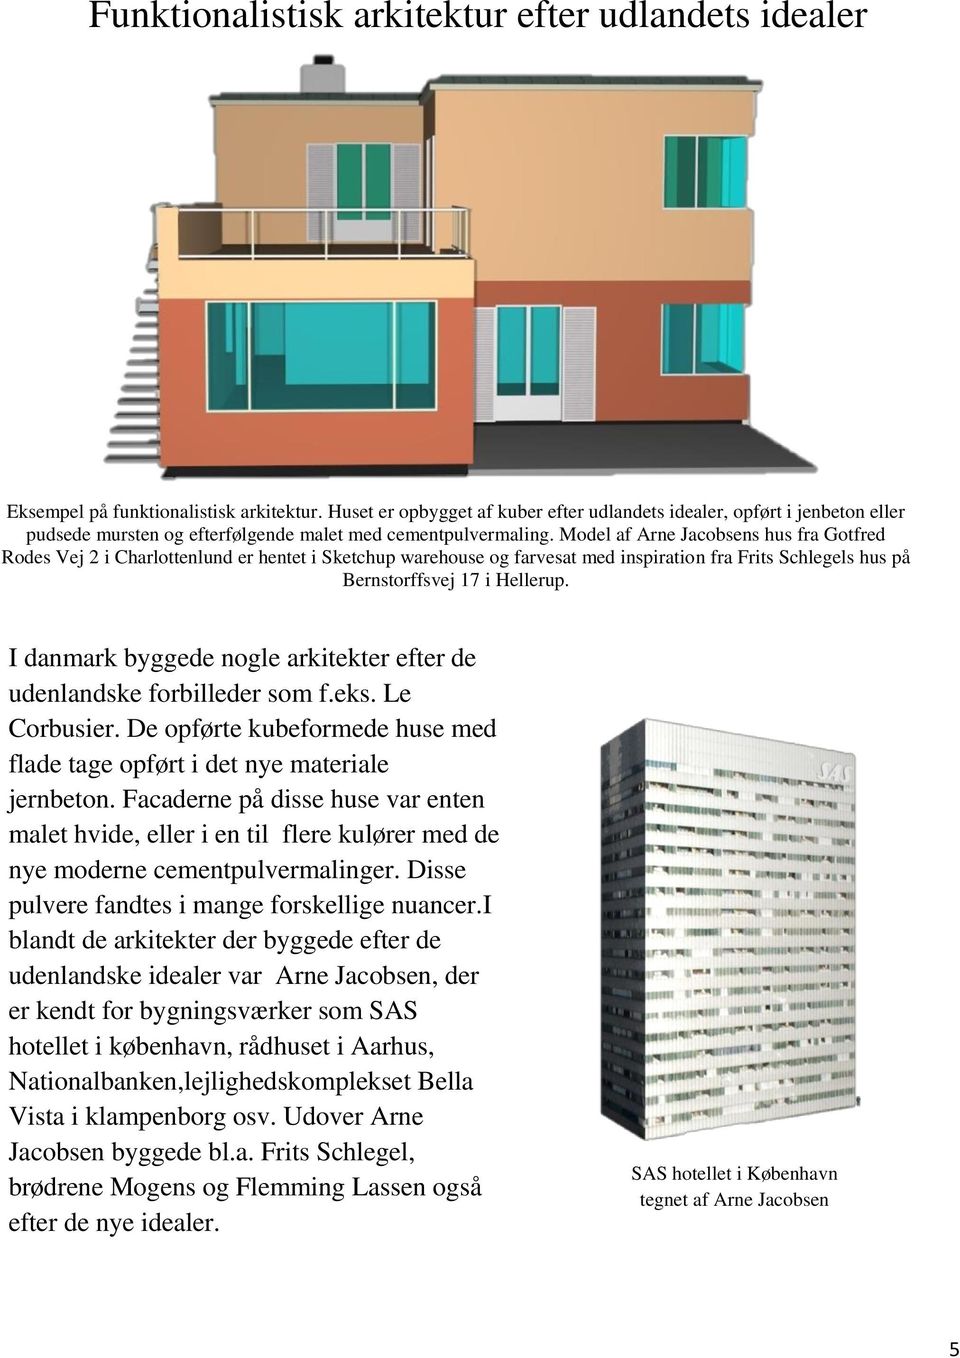 Model af Arne Jacobsens hus fra Gotfred Rodes Vej 2 i Charlottenlund er hentet i Sketchup warehouse og farvesat med inspiration fra Frits Schlegels hus på Bernstorffsvej 17 i Hellerup.